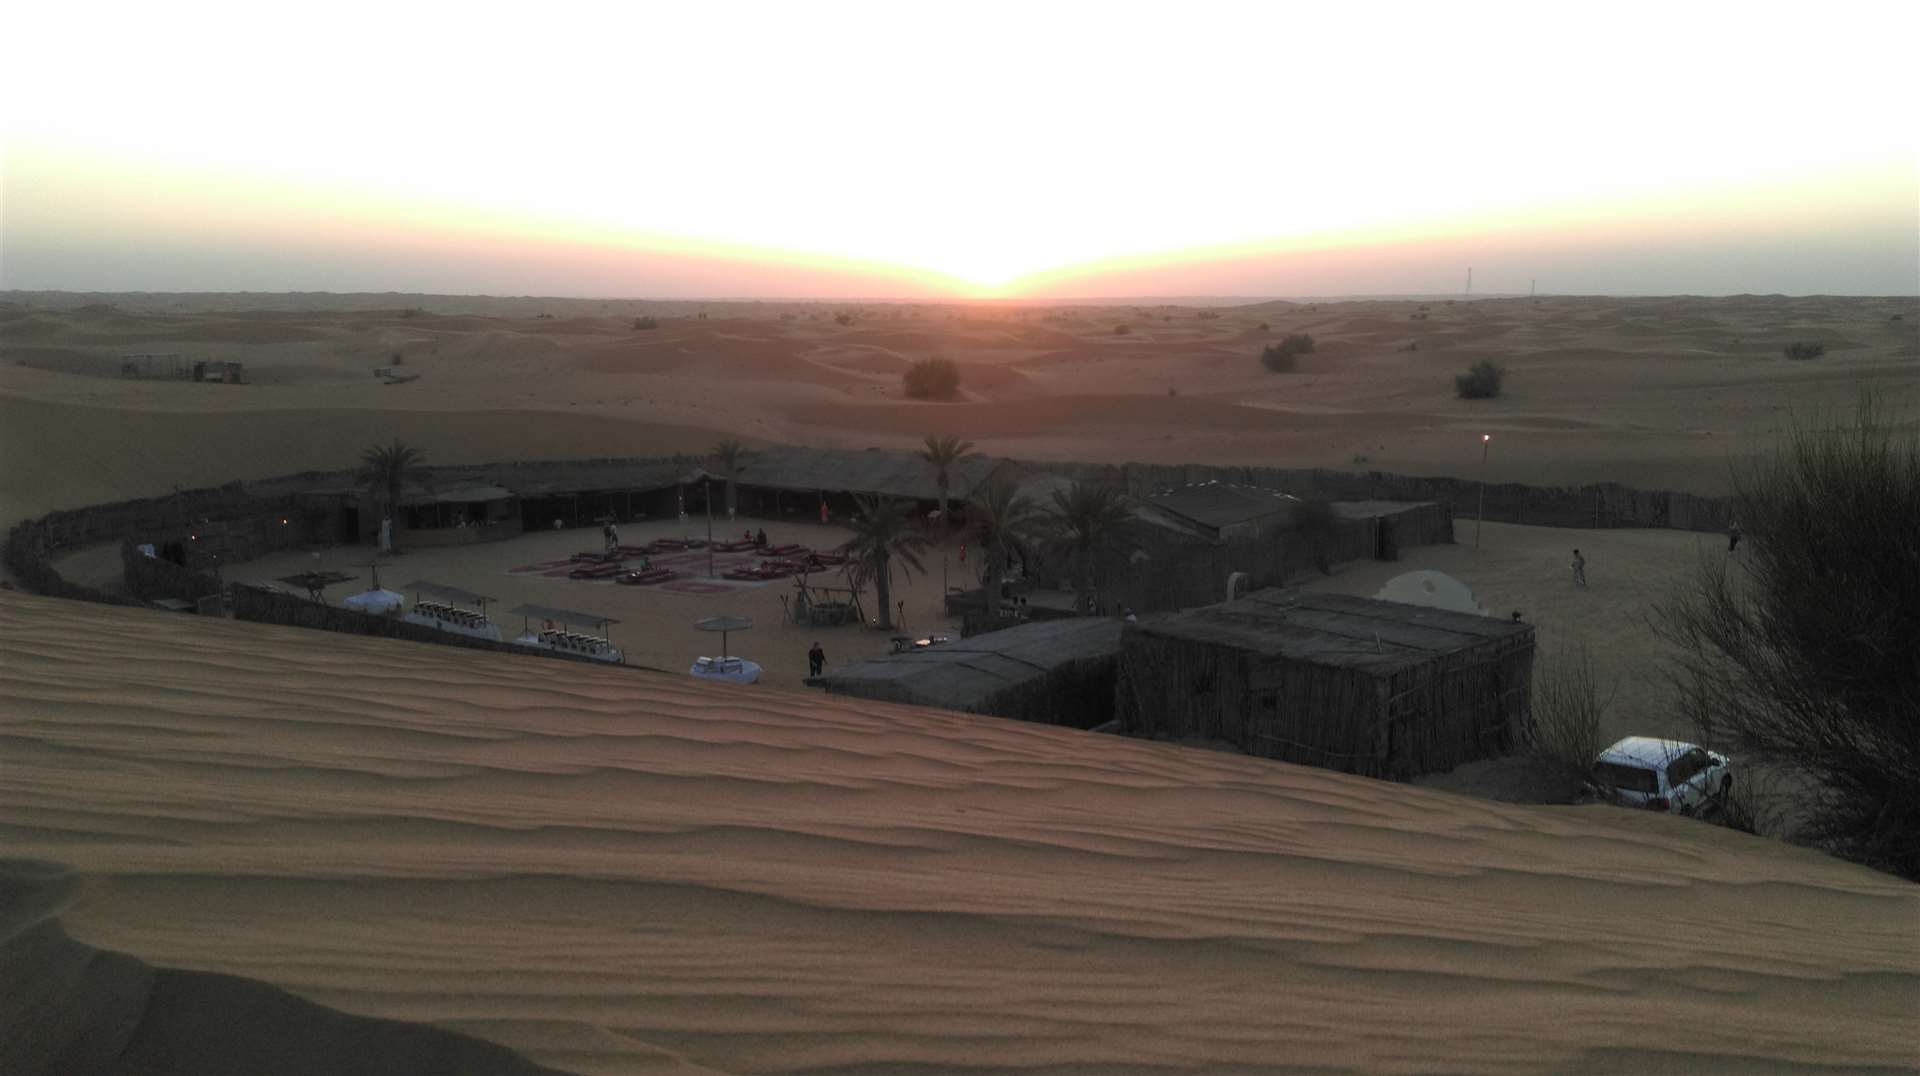 Sun set across the desert